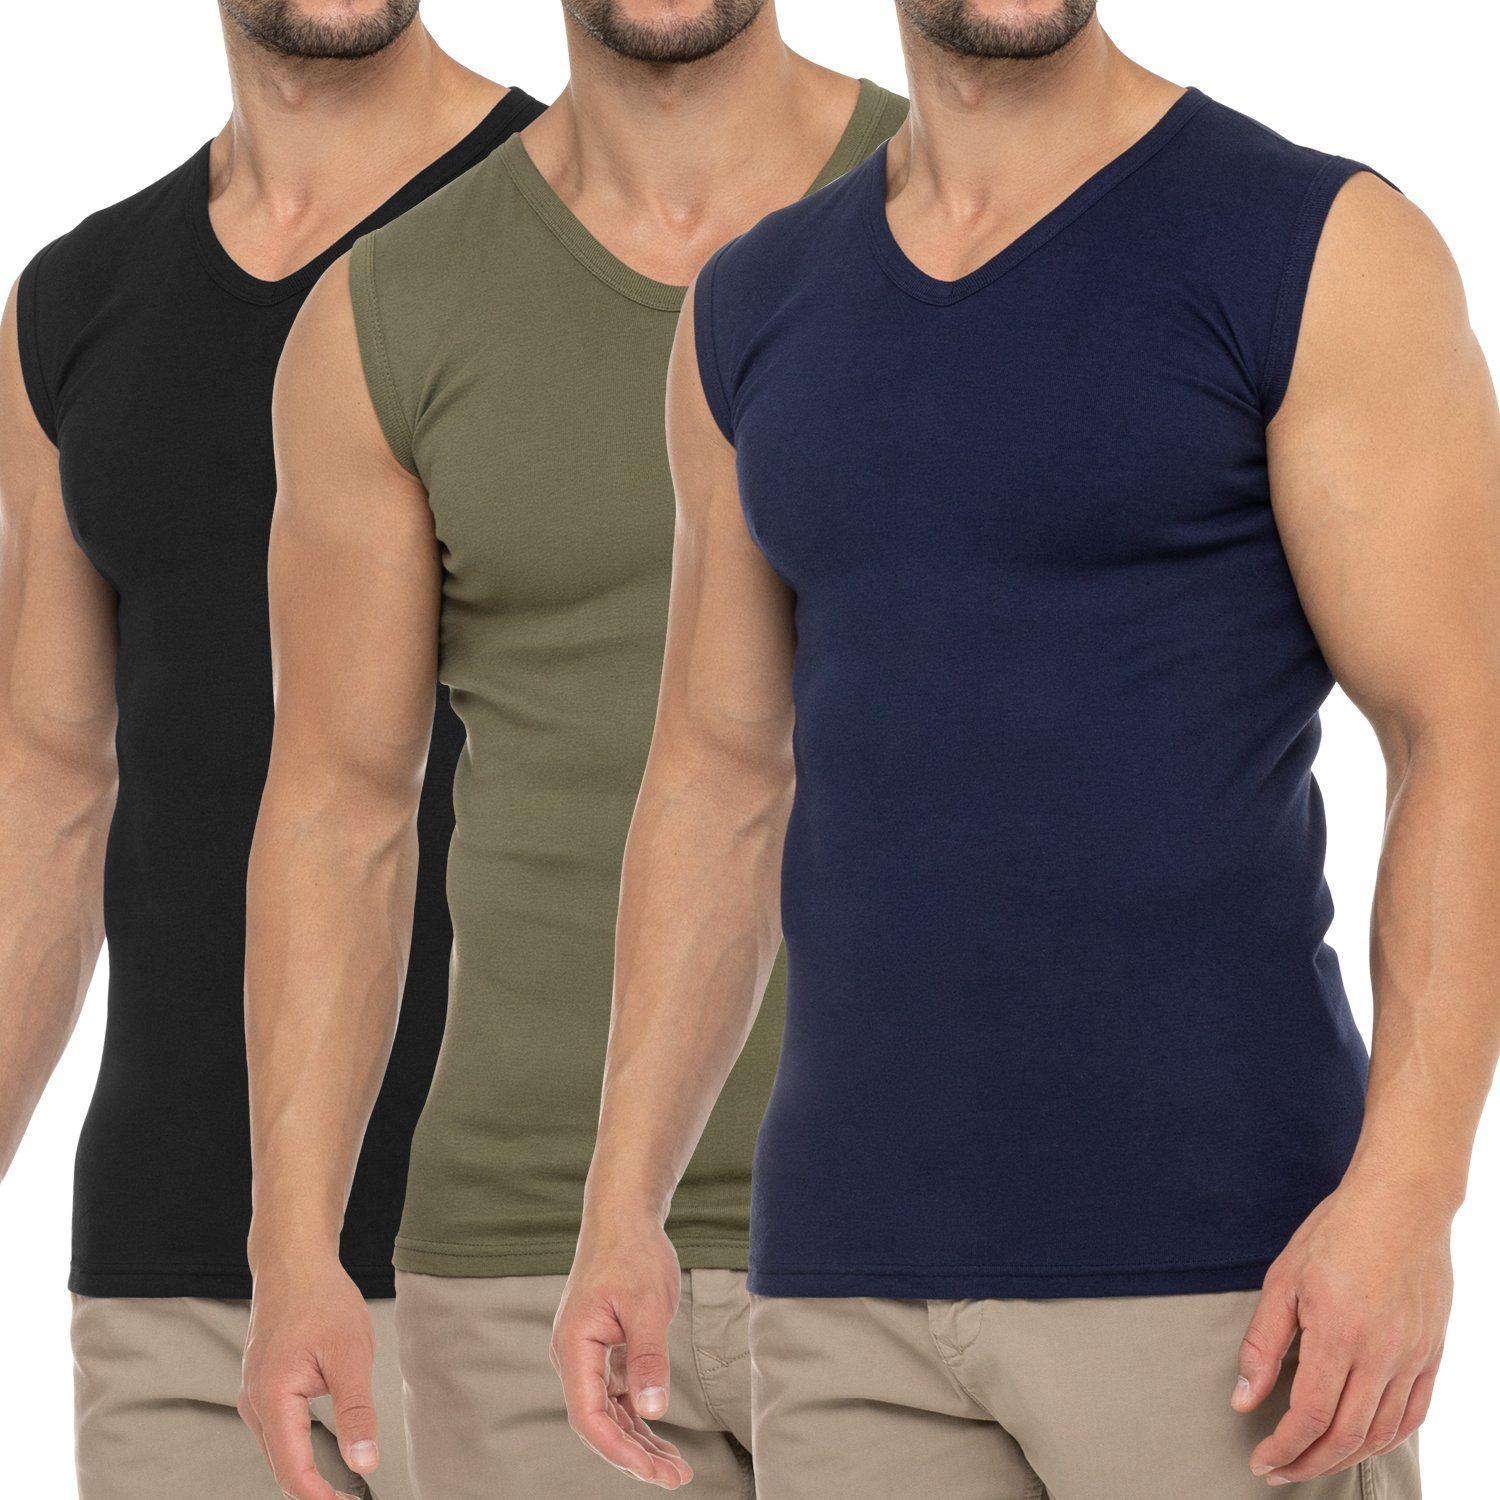 Marine Unterhemd Herren Muscle Schwarz Olive / Business Shirt Muskelshirt celodoro Pack) / V-Neck (3er